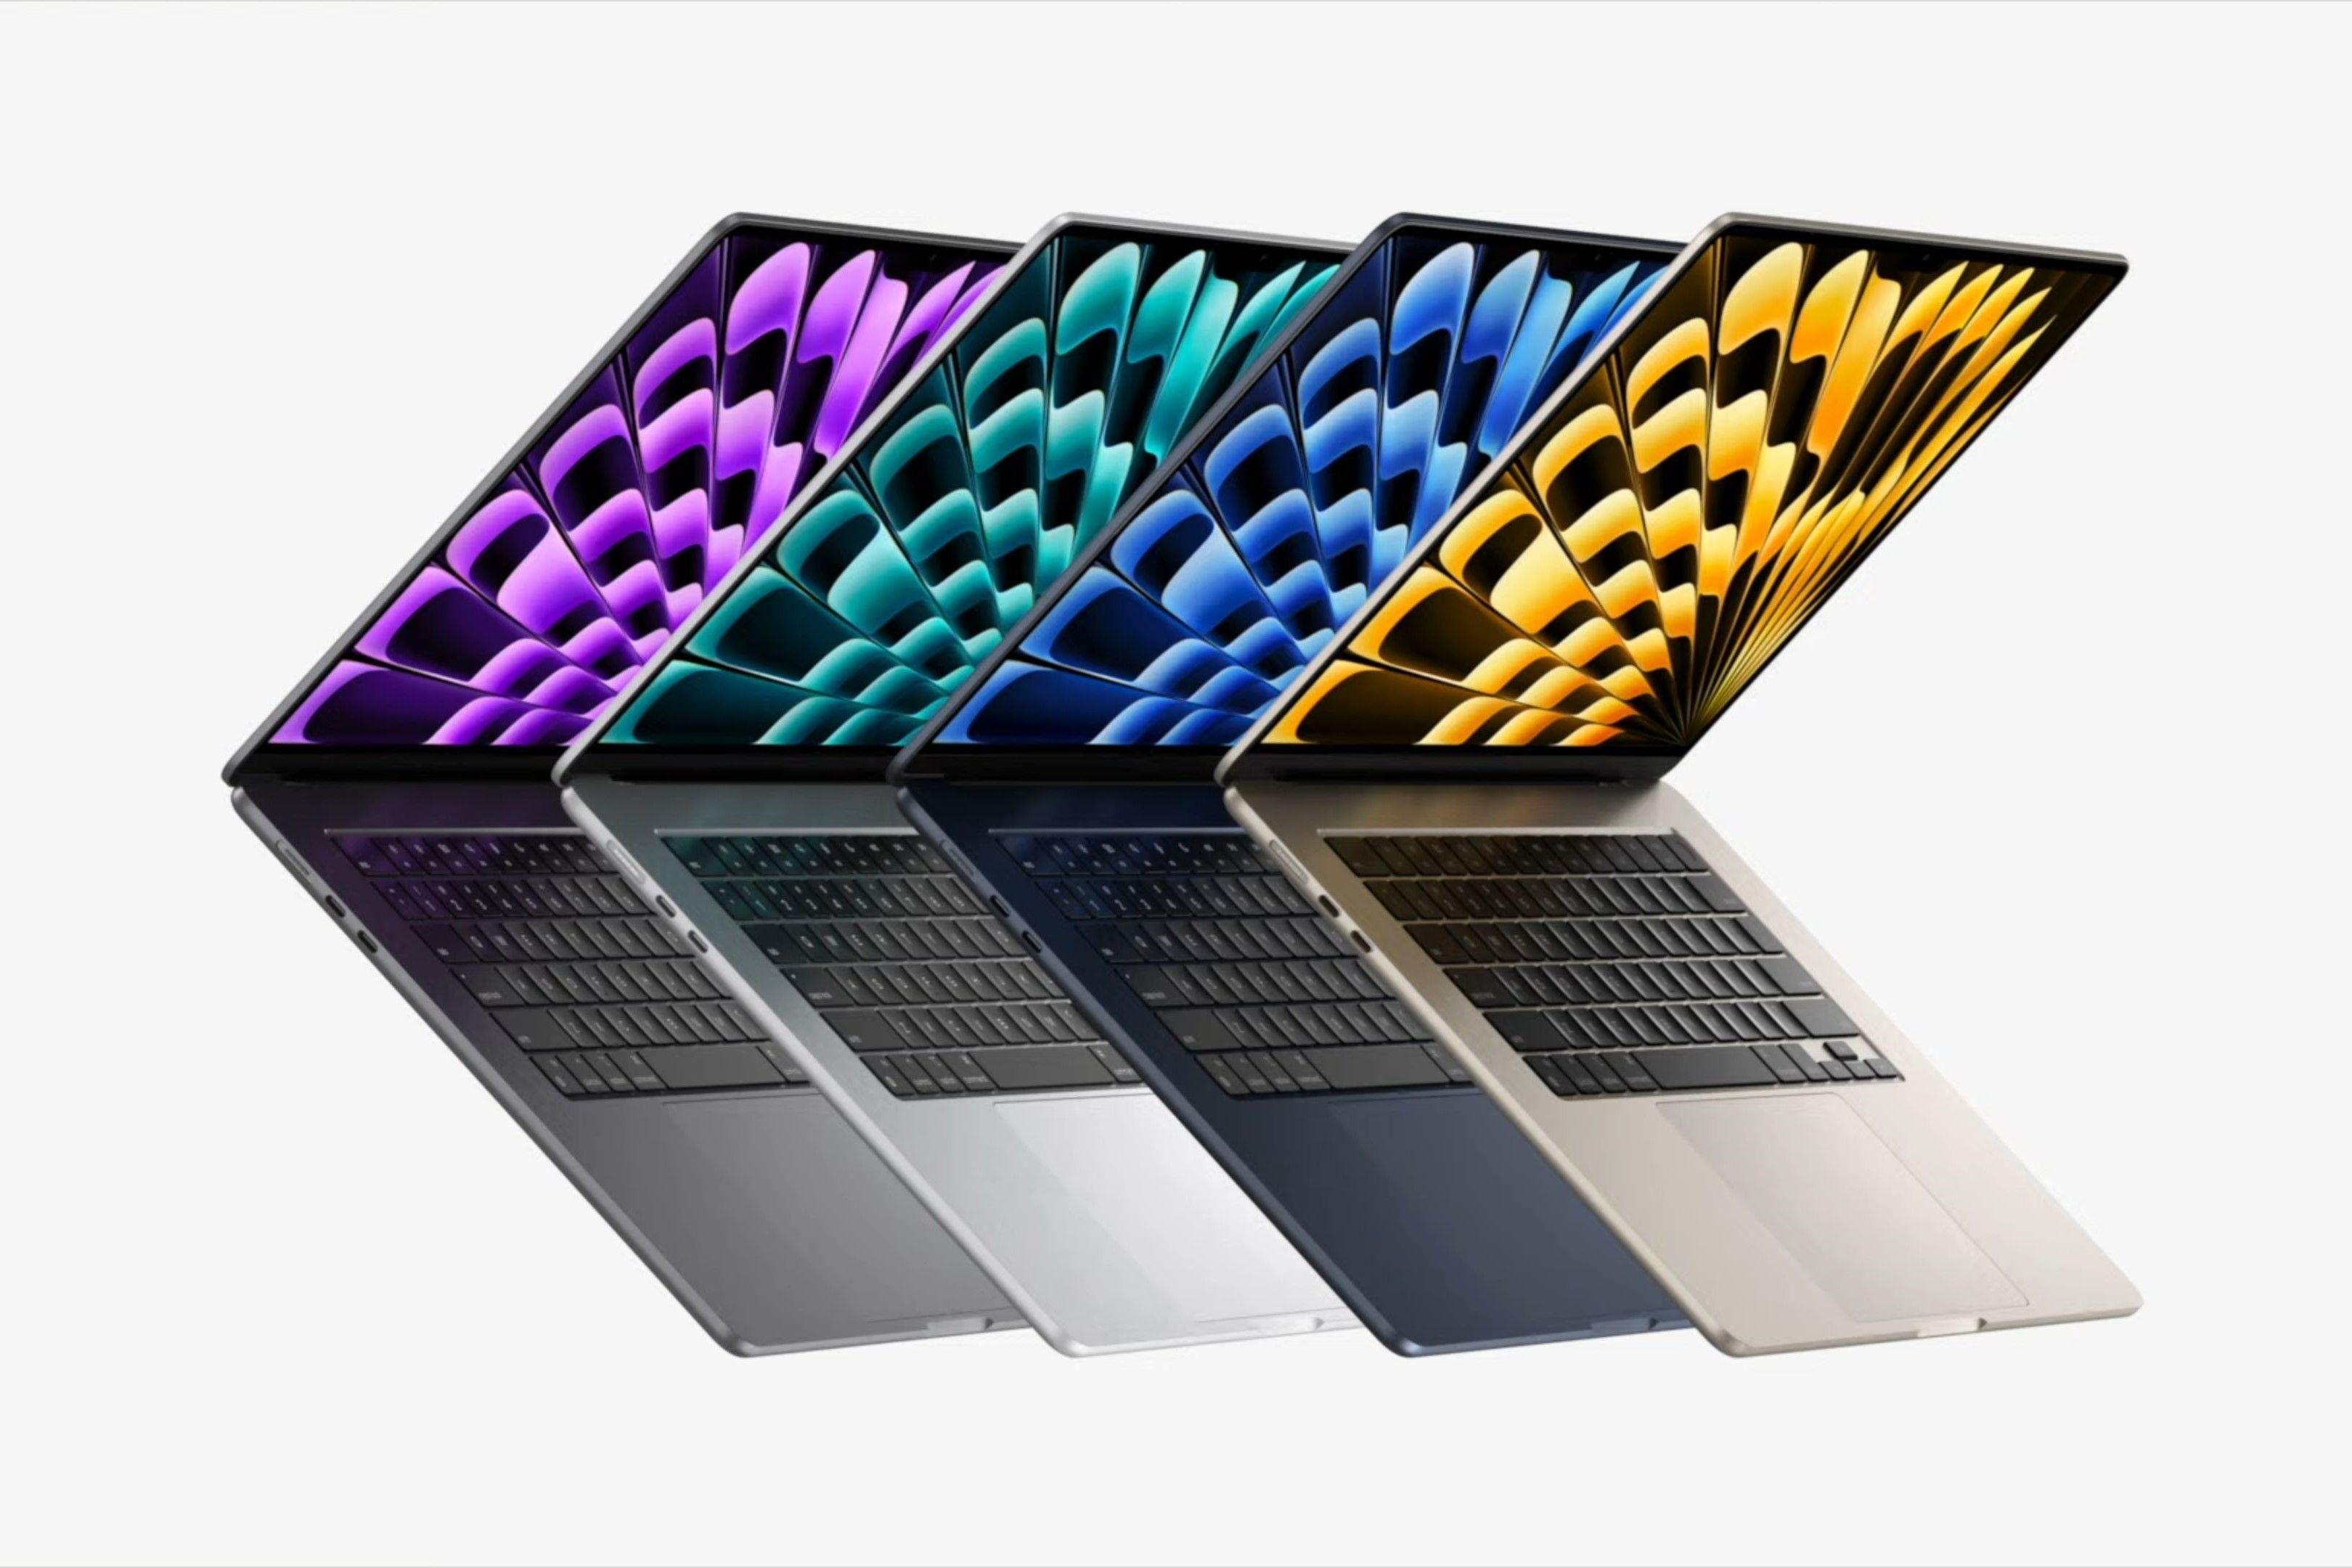 MacBook Air 15-inch colors